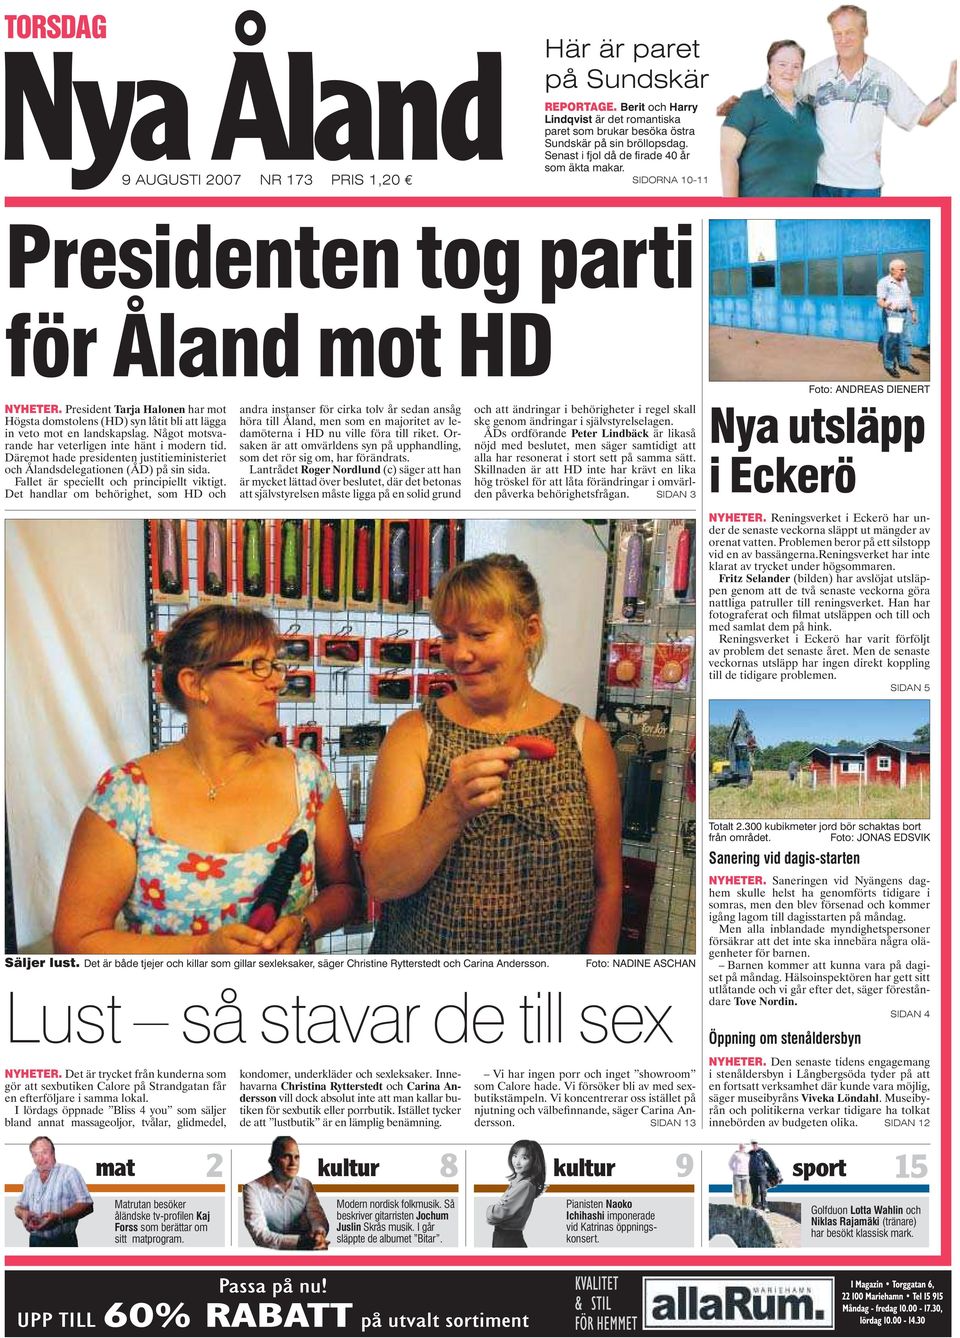 Presidenten tog parti för Åland mot HD Foto